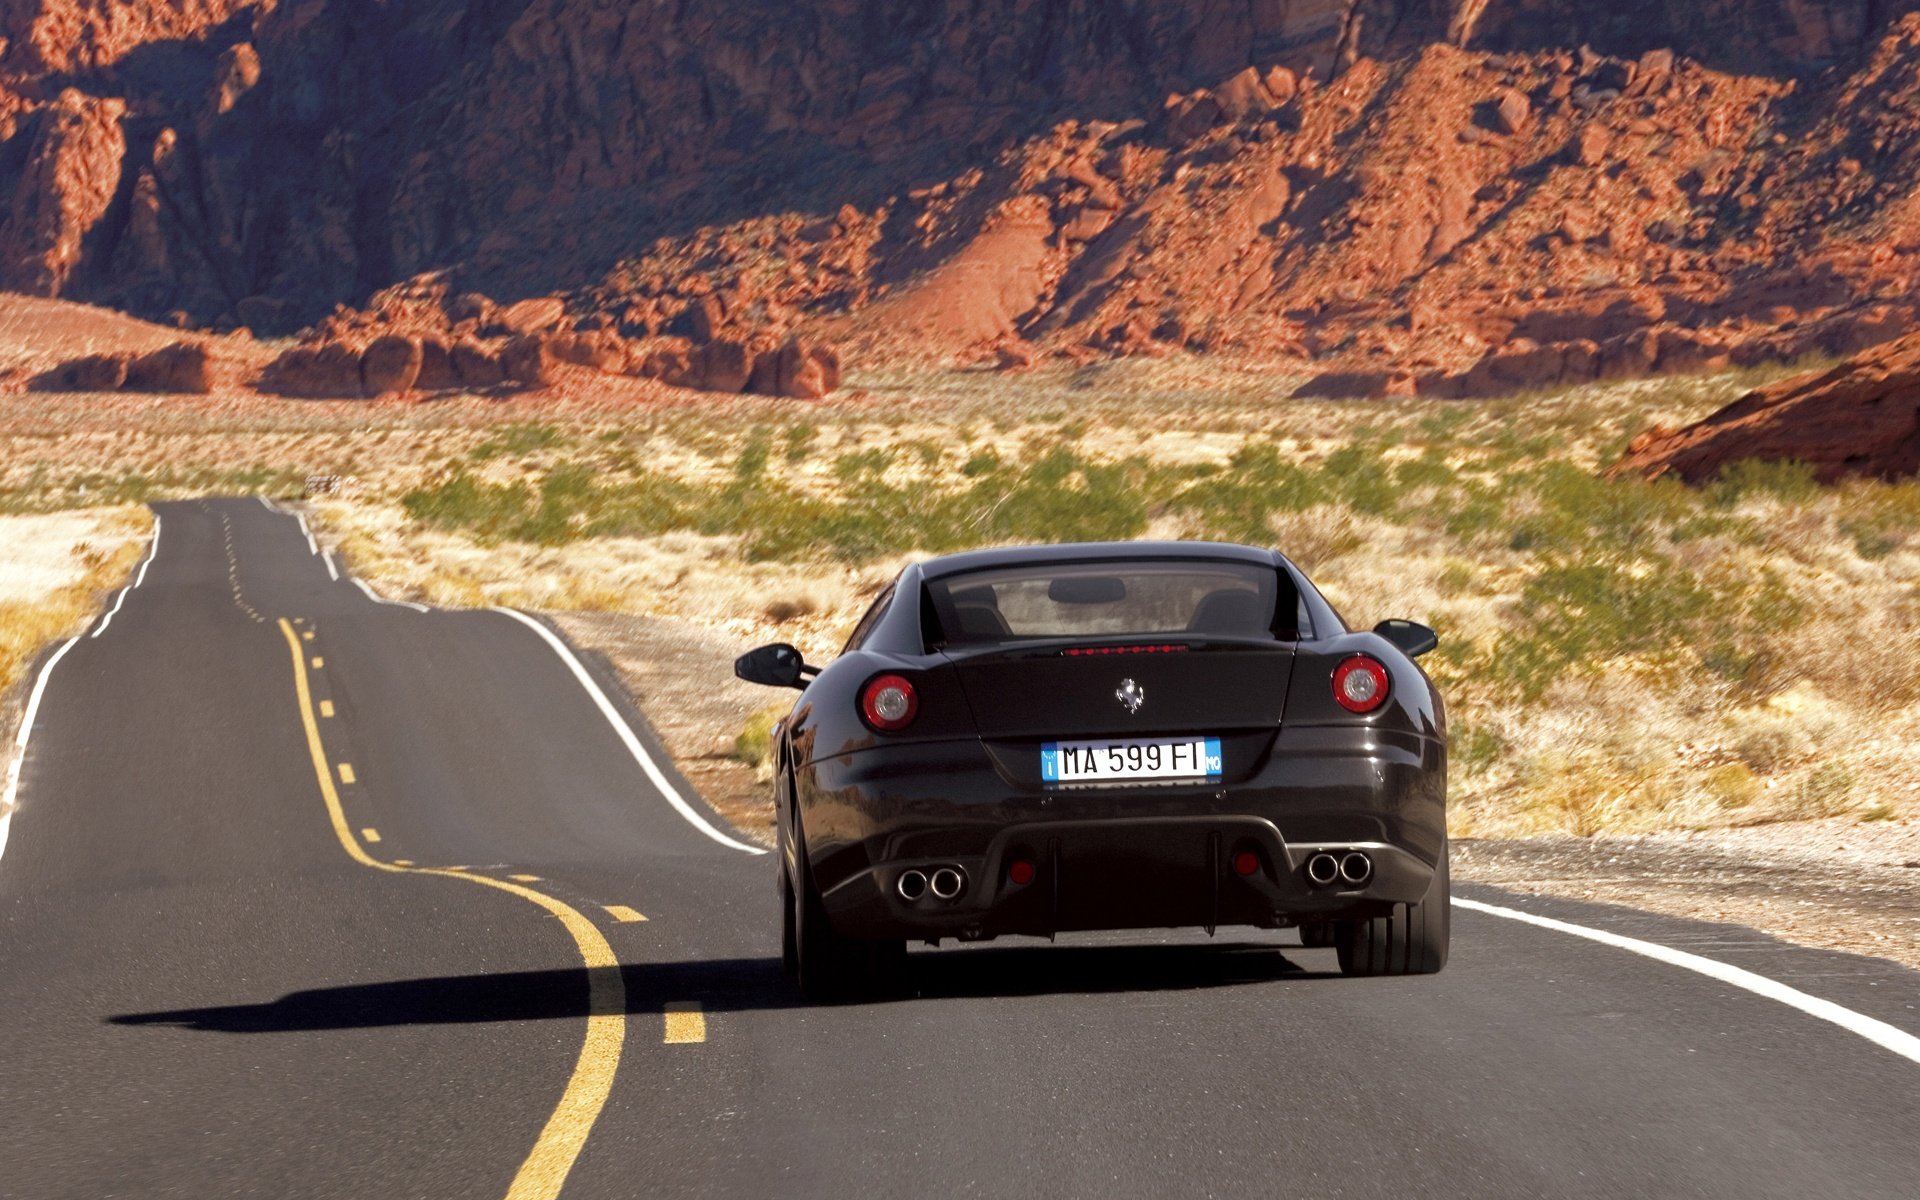 Картинка машина на дороге. Ferrari 599 Drift. Машина на дороге. Автомобиль едет. Красивая машина на дороге.